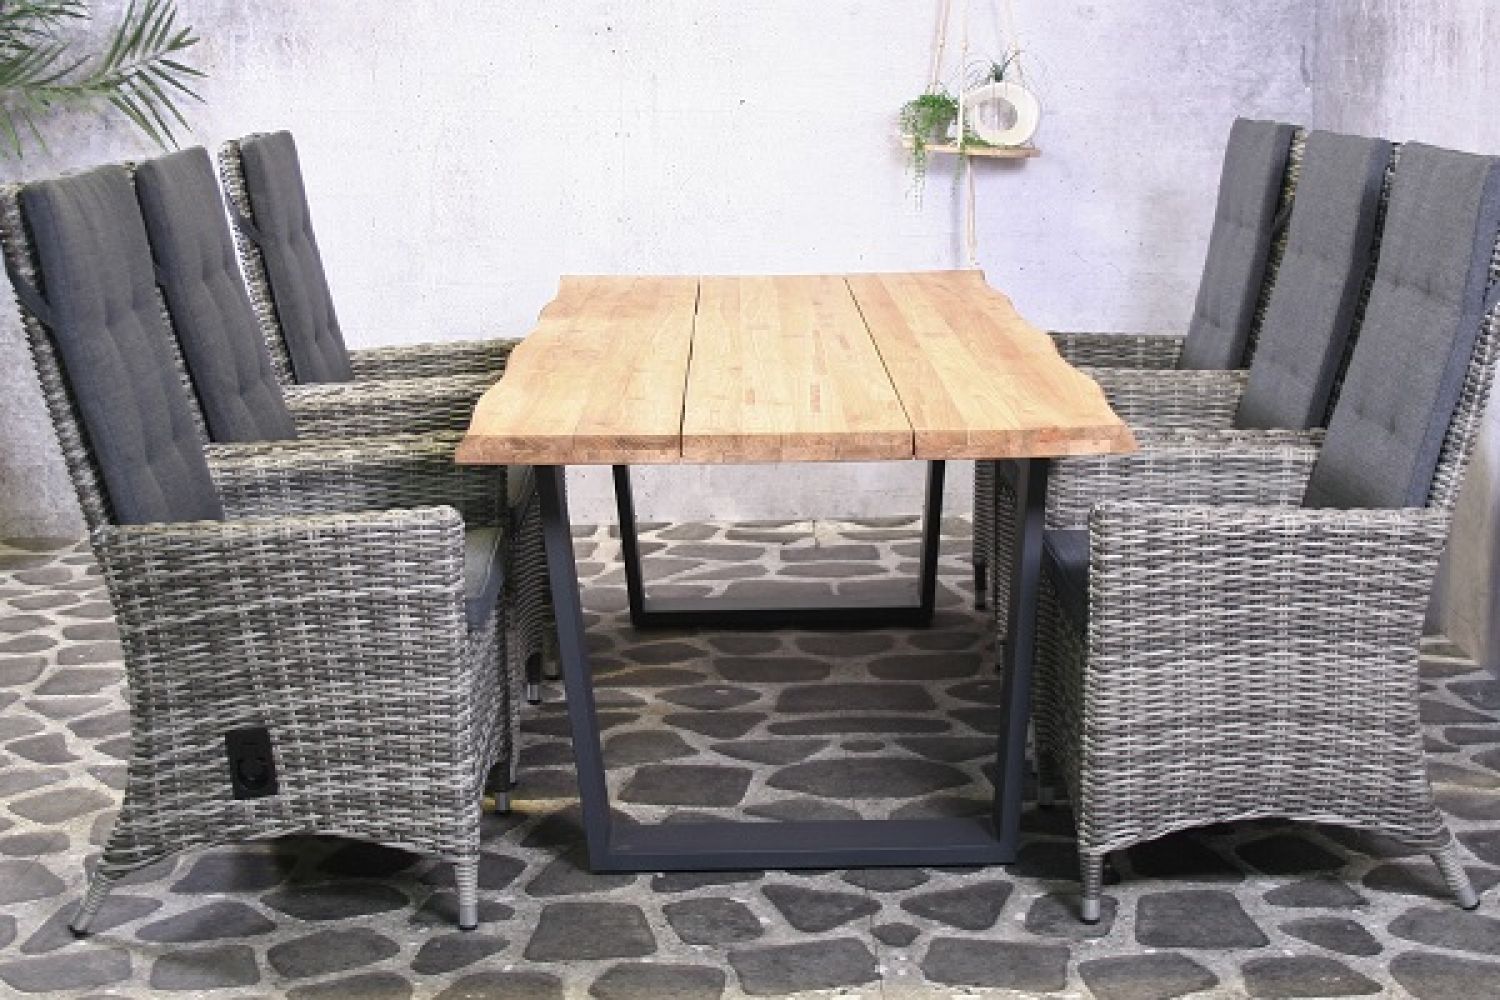 Tuinset Ferro met teak tafel en wicker stoelen